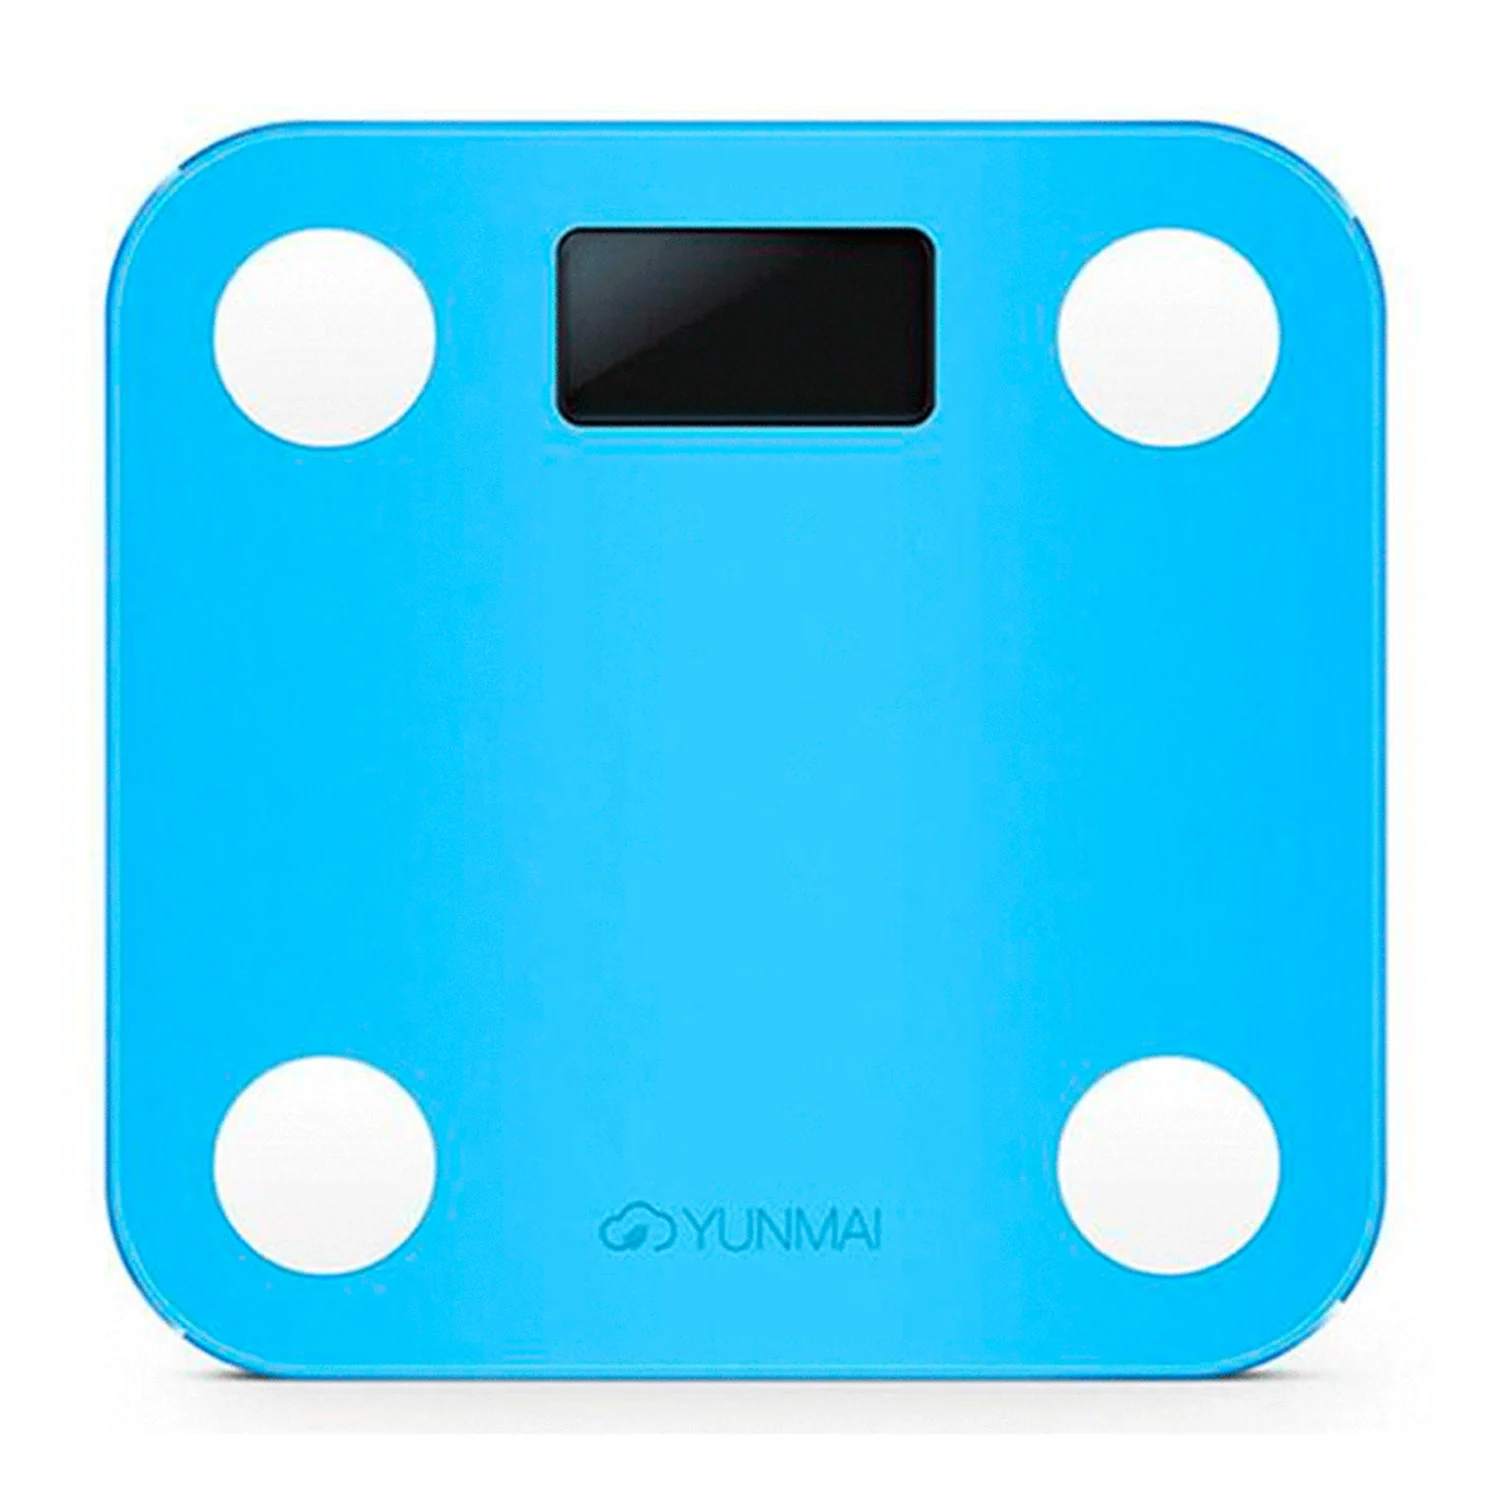 Balança Digital Yunmai Mini Bioimpedância com App - Azul (Modelo 1501)